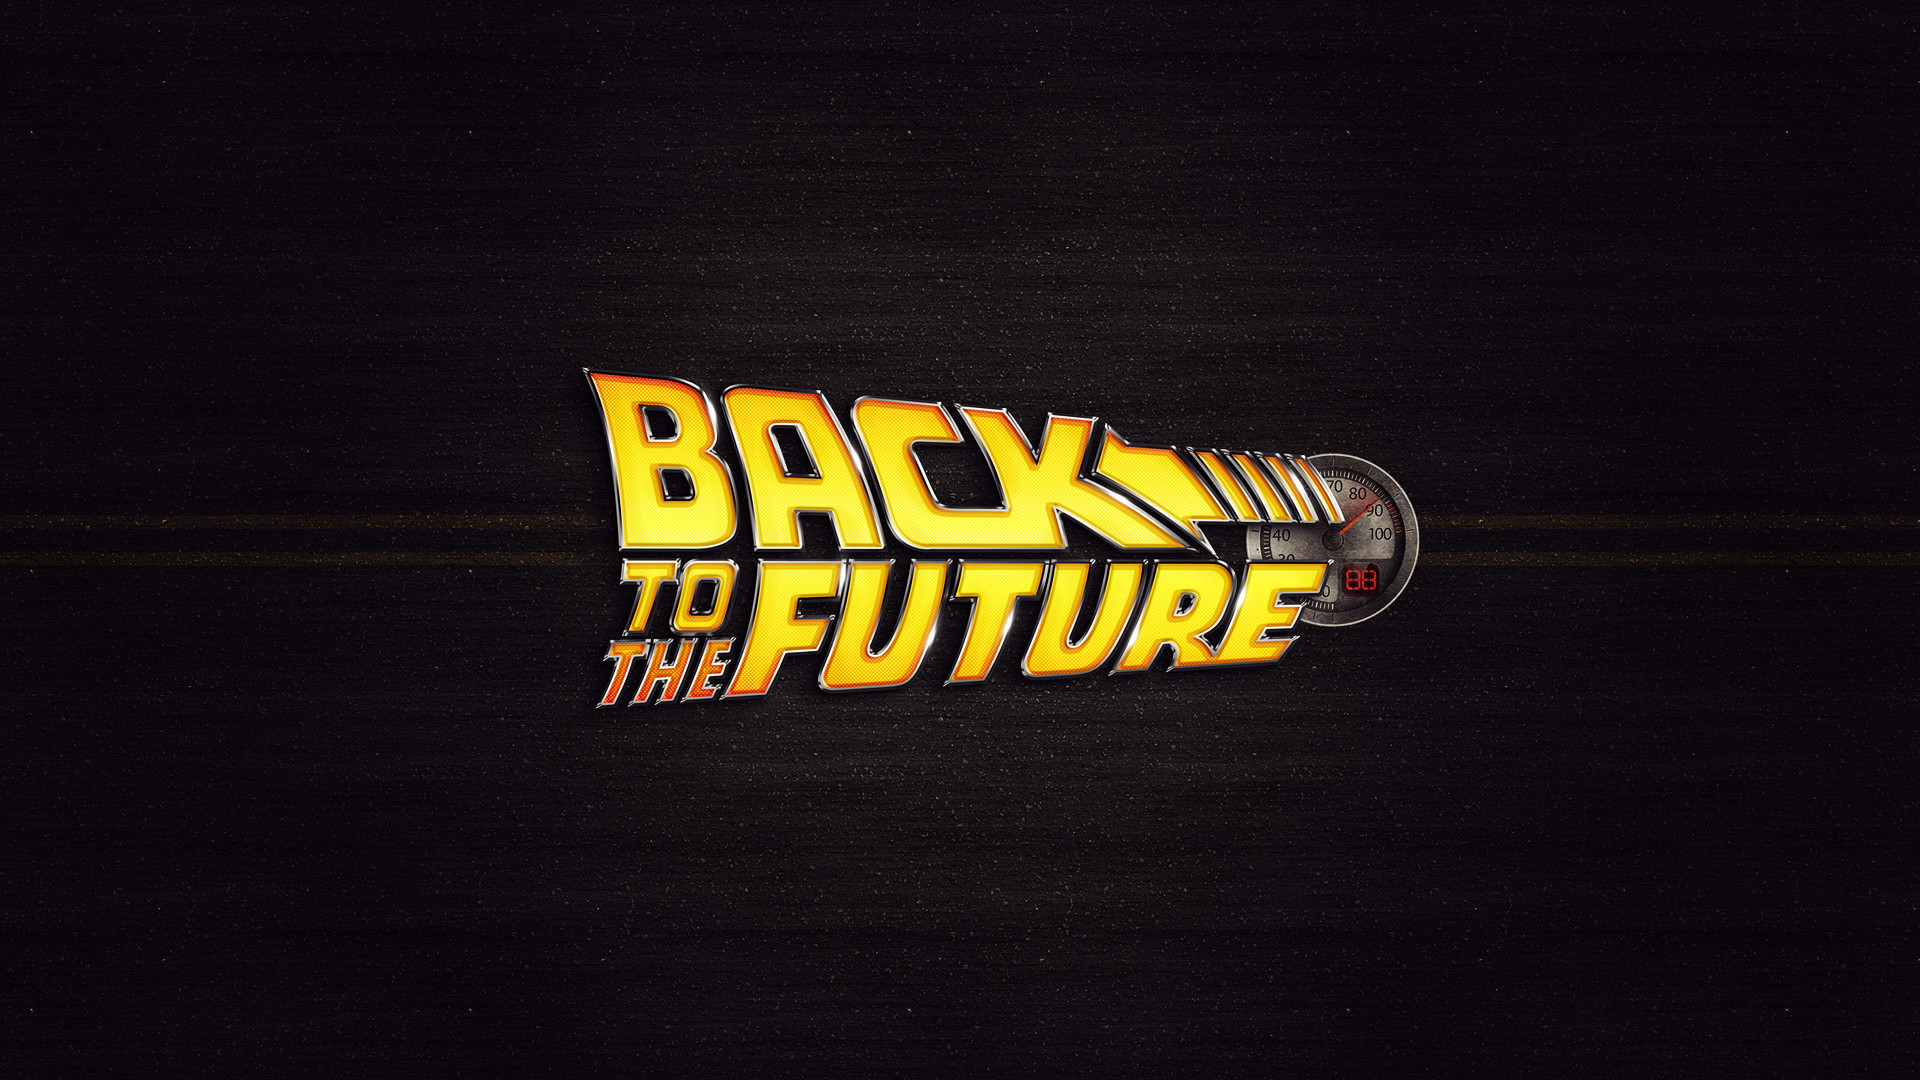 1920x1080 Back To The Future Movie Logo Desktop Wallpaper Uploaded by DesktopWalls